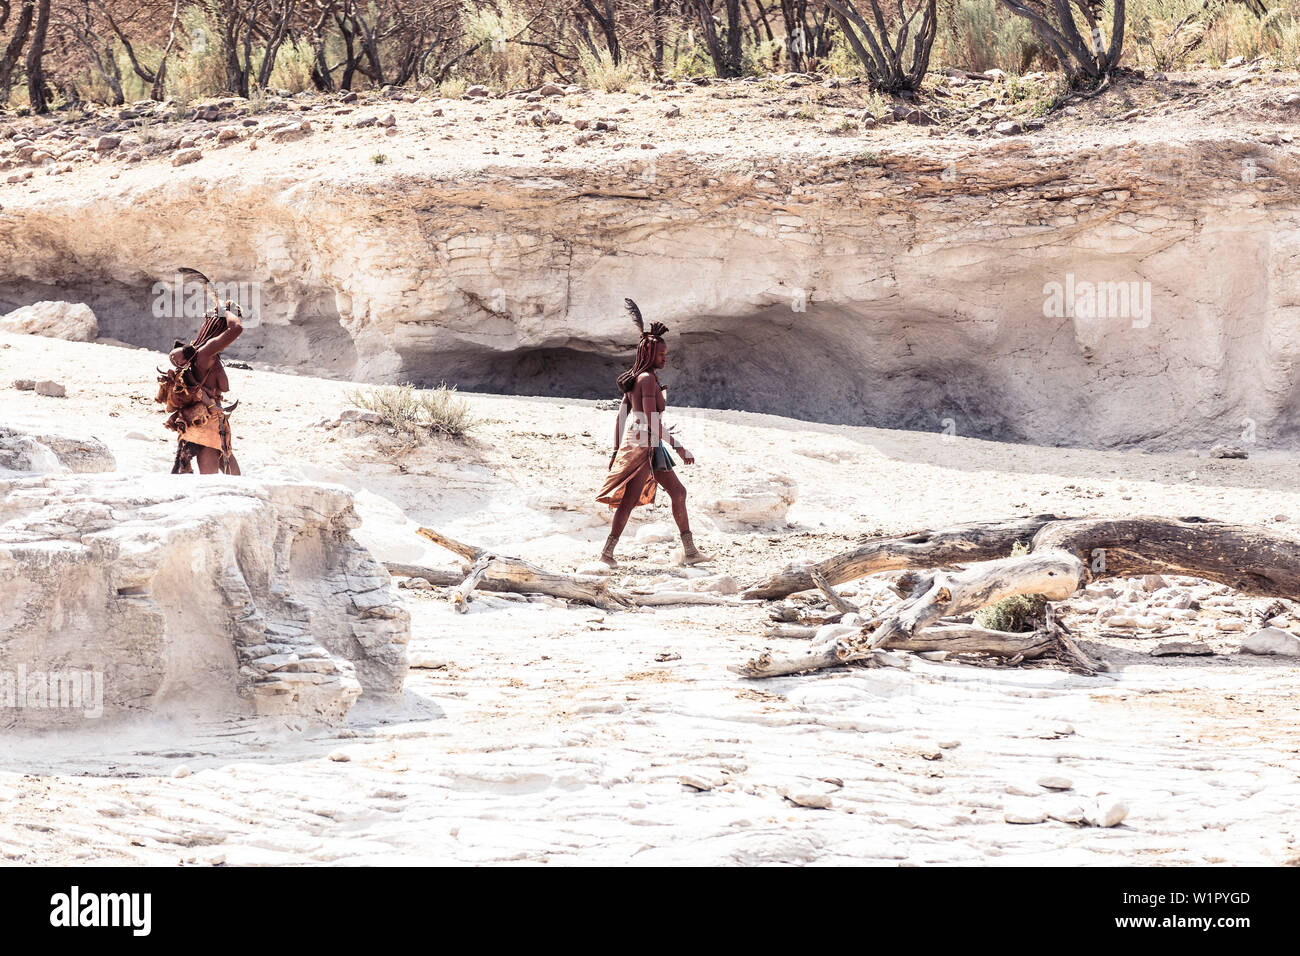 Deux femmes Himba, l'une d'entre elles portant son enfant, à la recherche de leur bétail dans une rivière à sec, Kunene, Namibie Banque D'Images